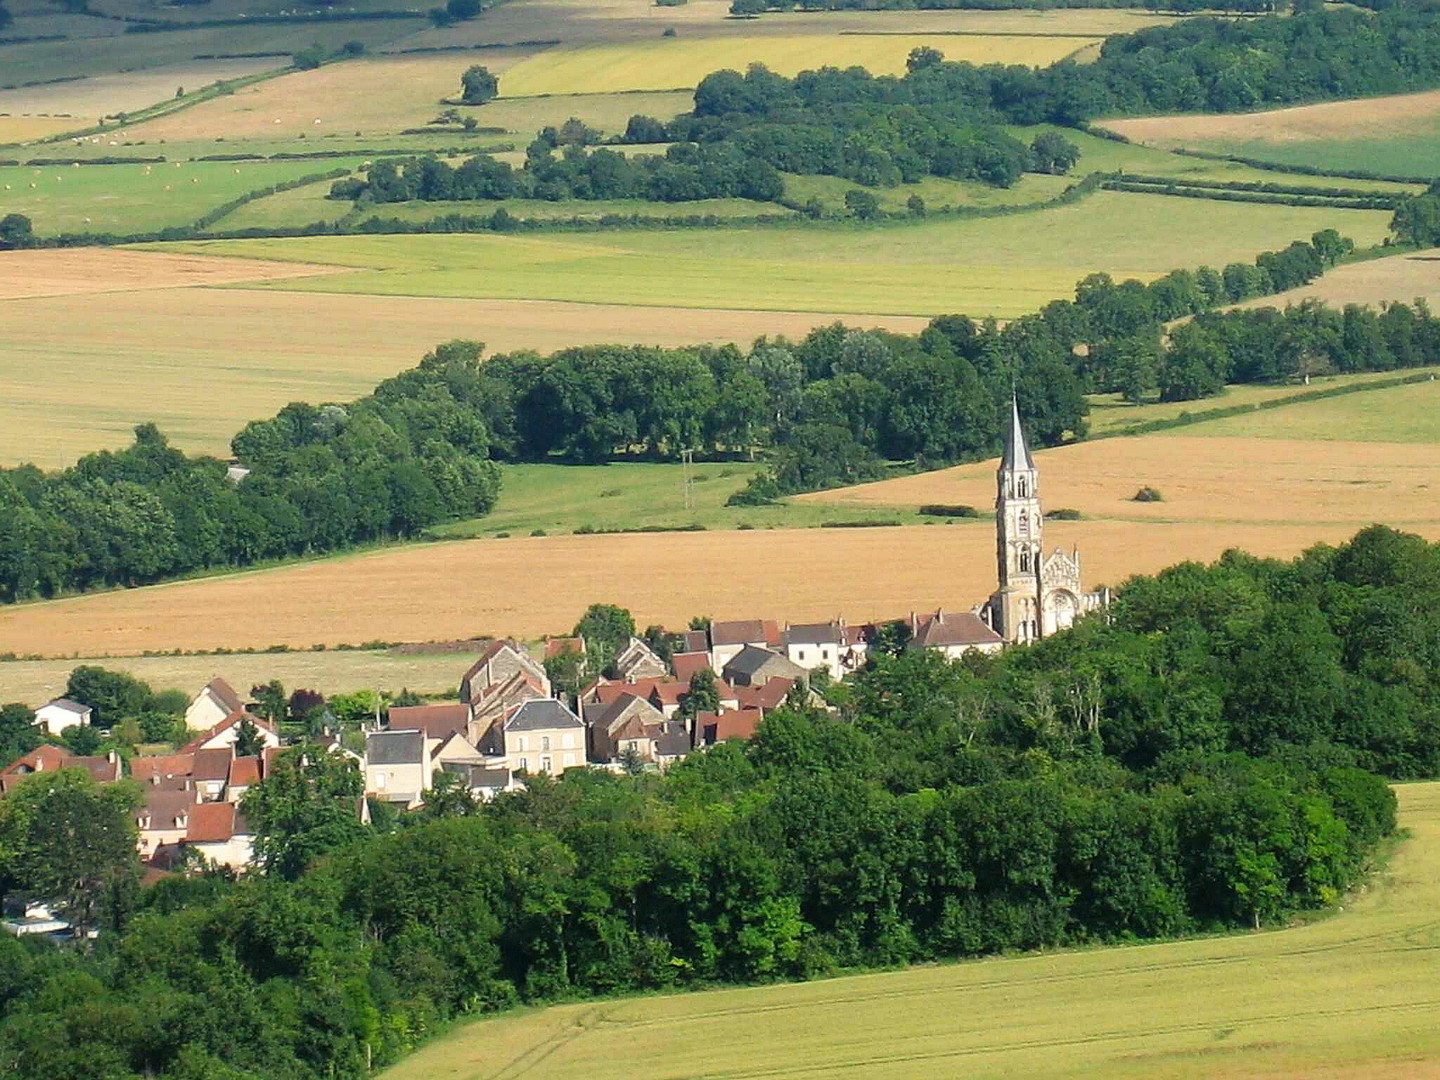 Ein beschauliches Dorf mit Namen Saint-Pére im Burgund/Frankreich